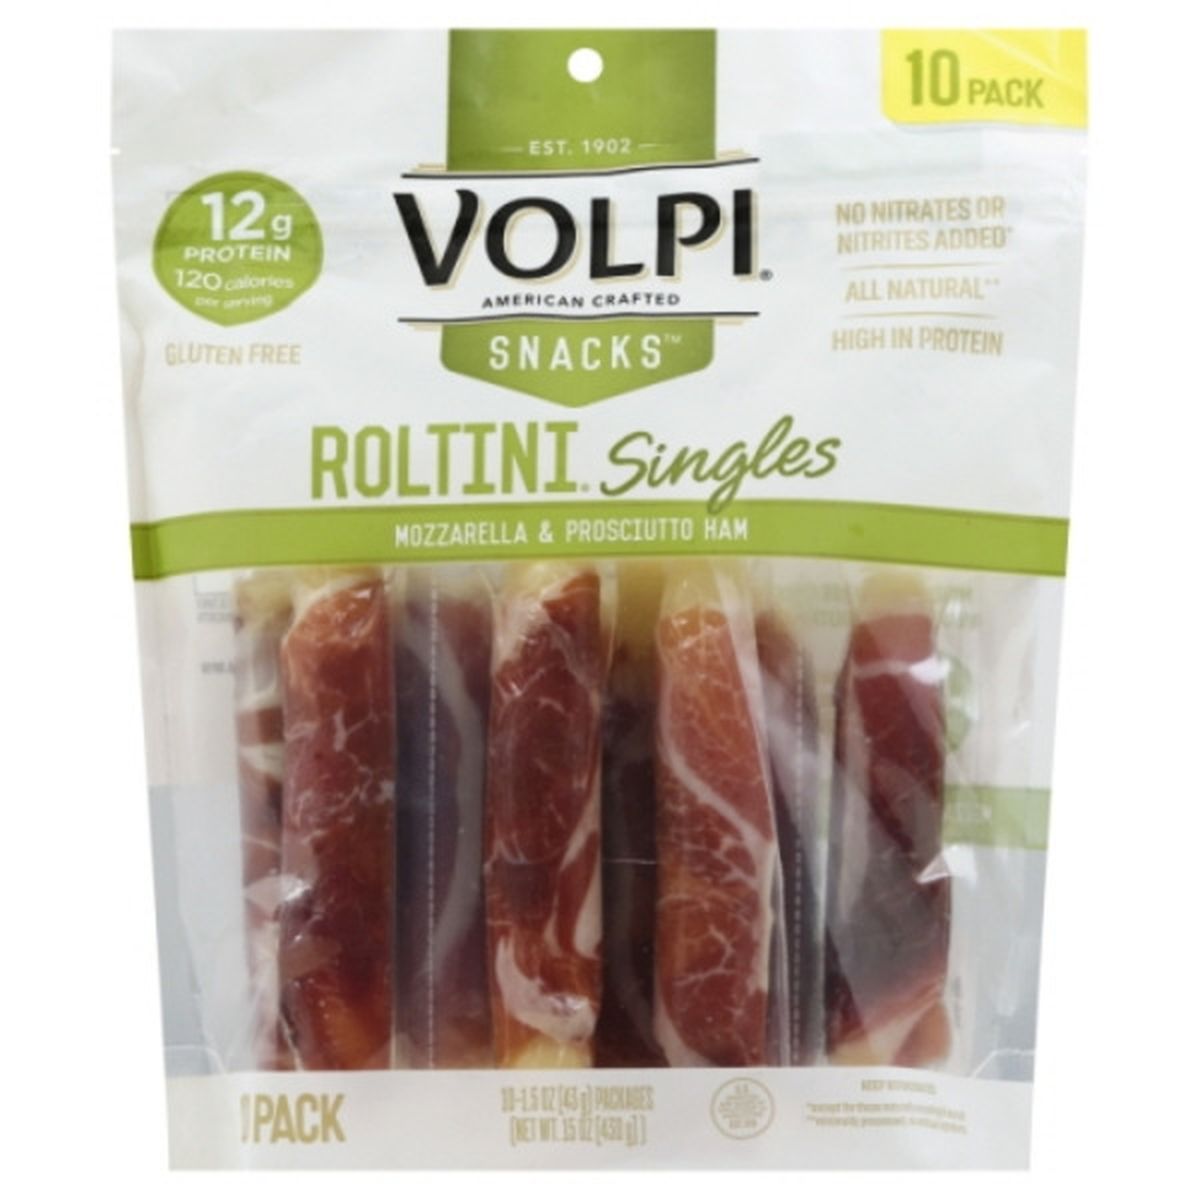 Calories in Volpi Roltini Snacks, Mozzarella & Prosciutto Ham, Singles, 10 Pack